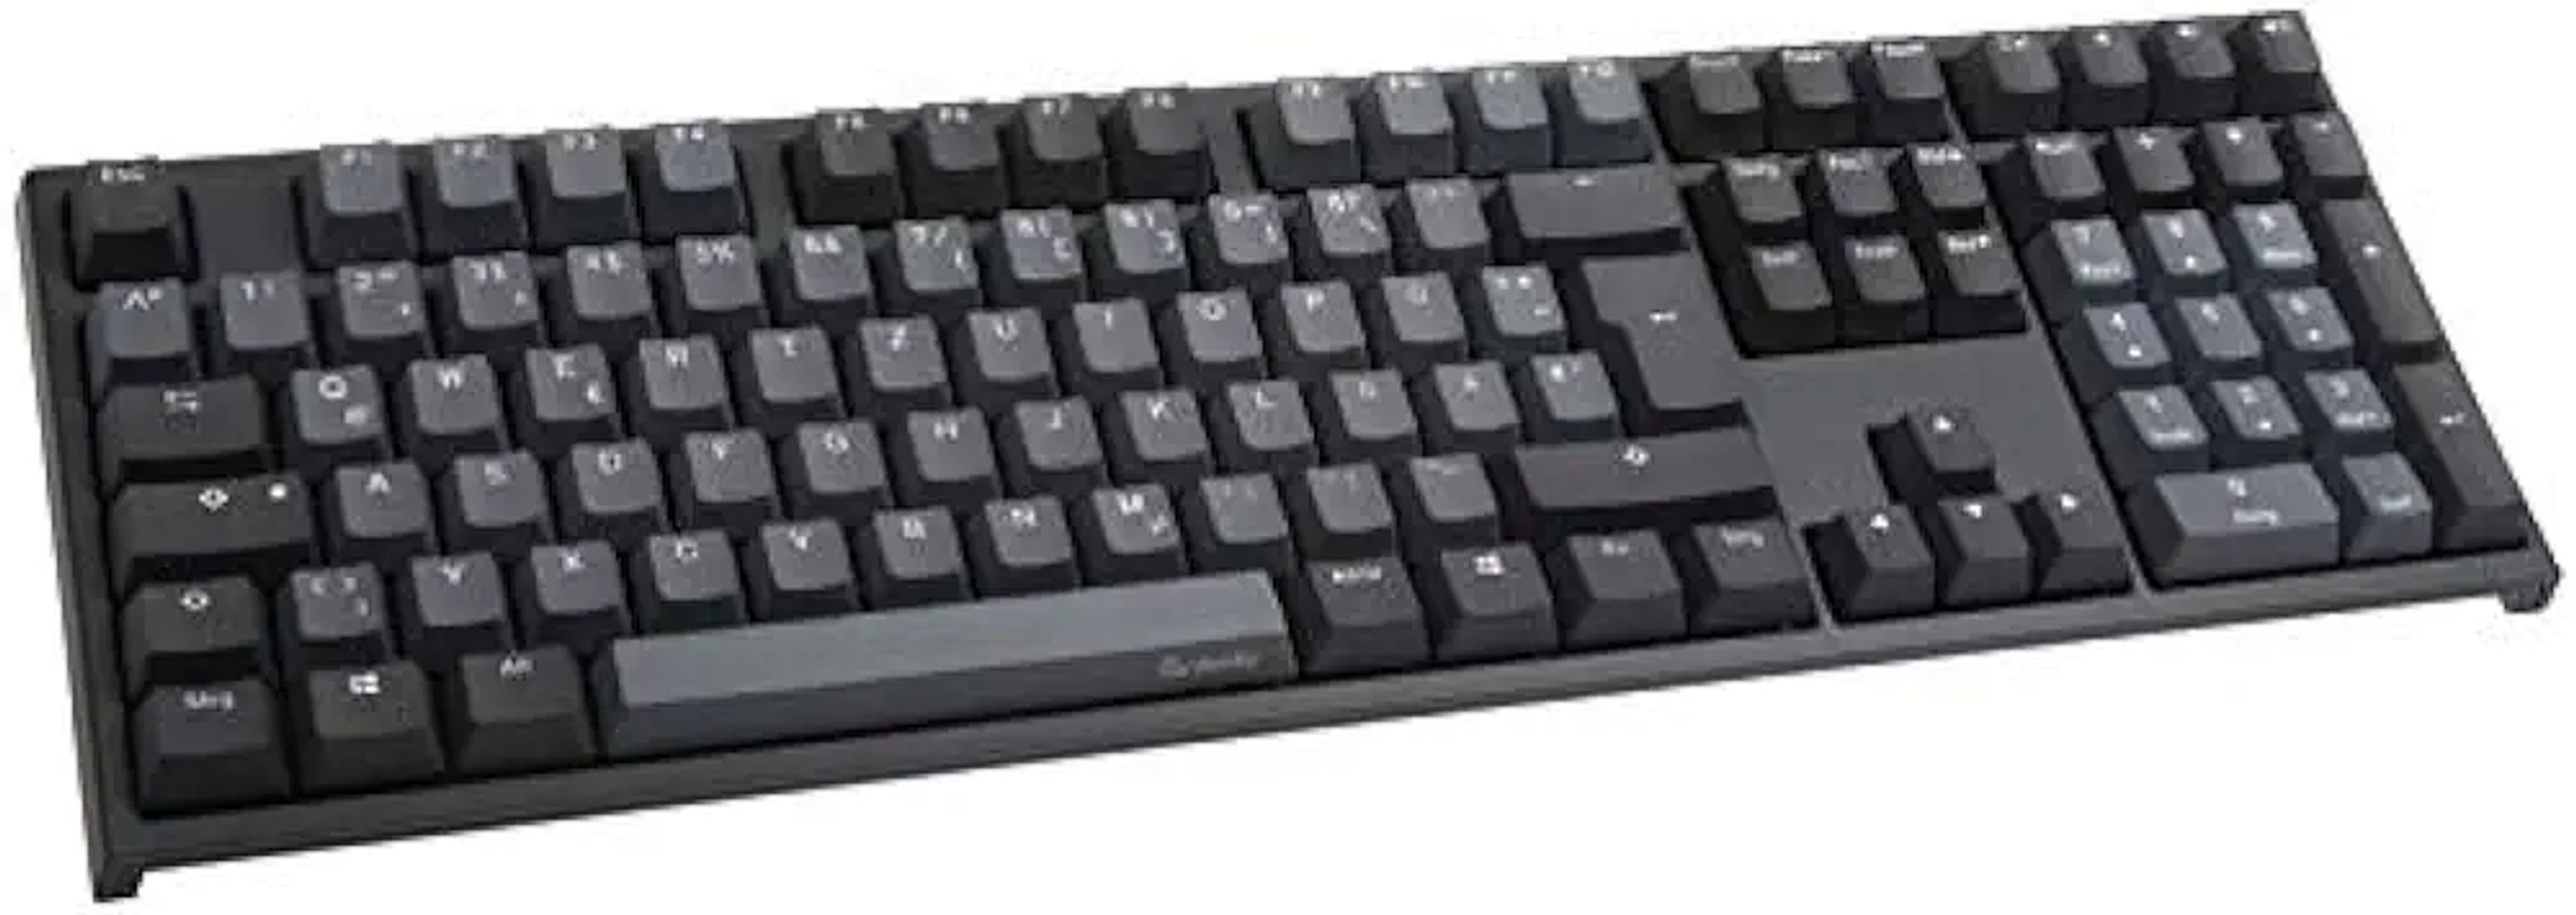 DKON1808-ADEPDZHBS, DUCKY Tastatur